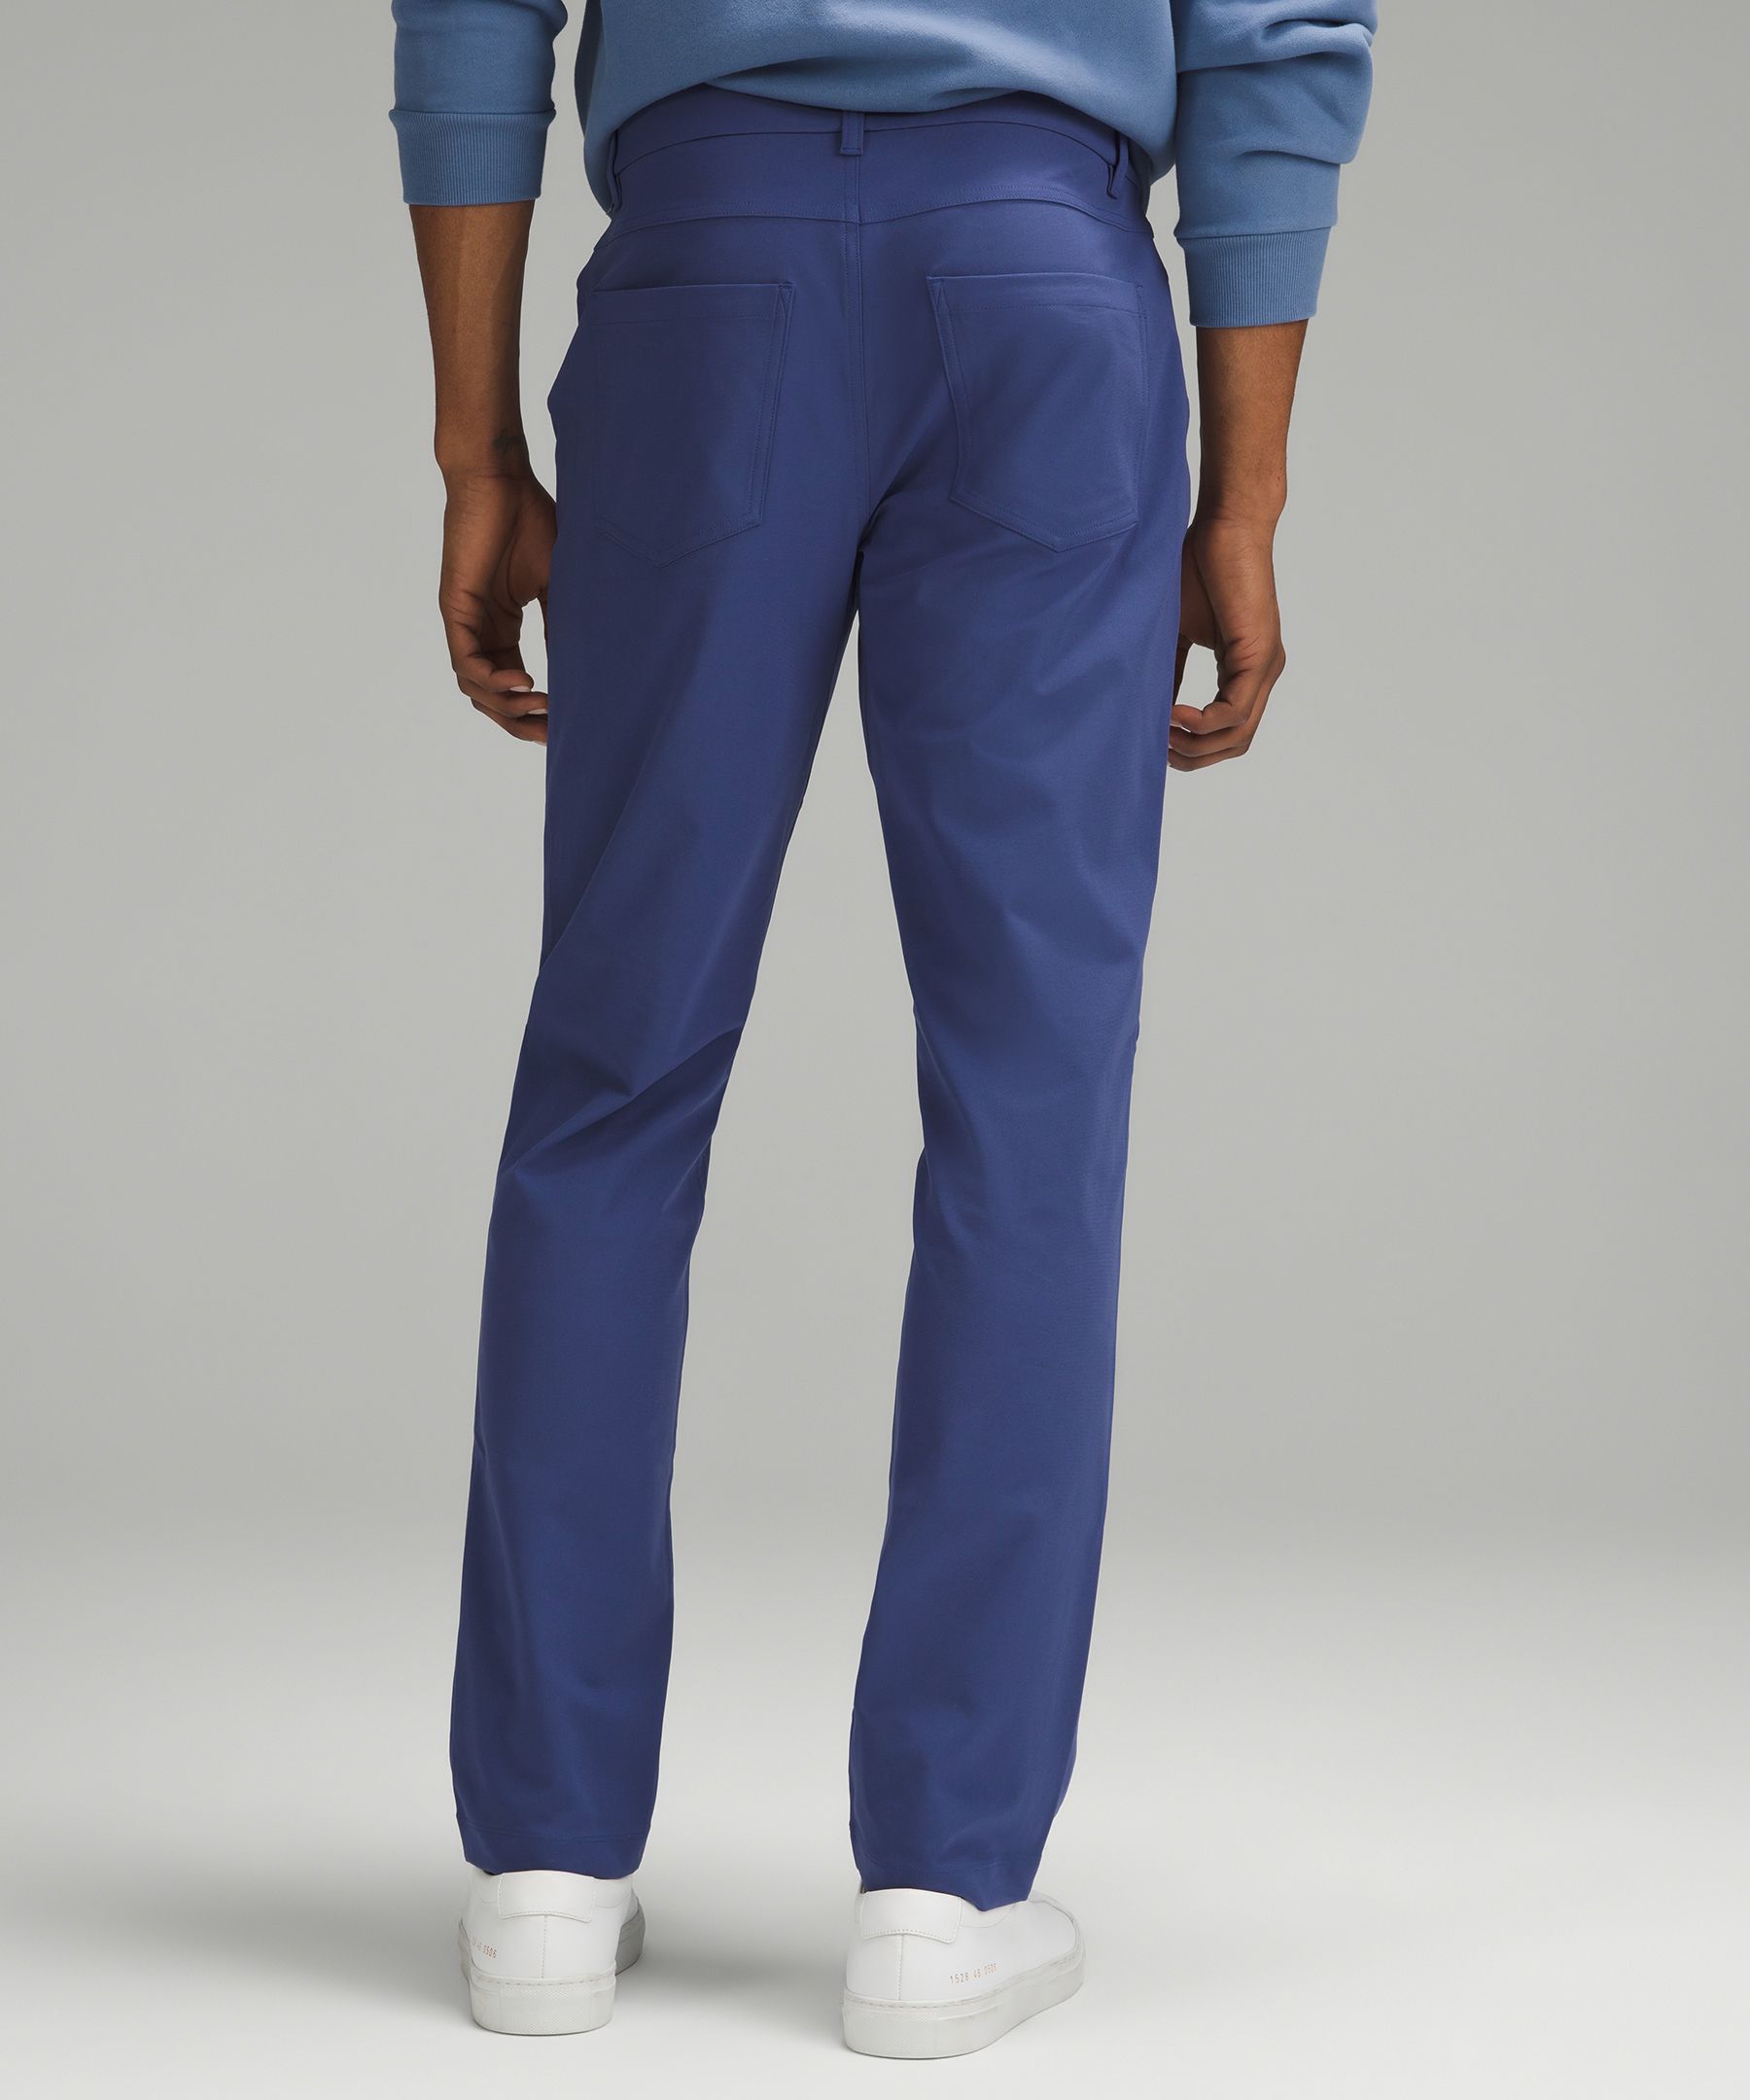 ABC Classic-Fit 5 Pocket Pant 32L *Warpstreme, Men's Trousers